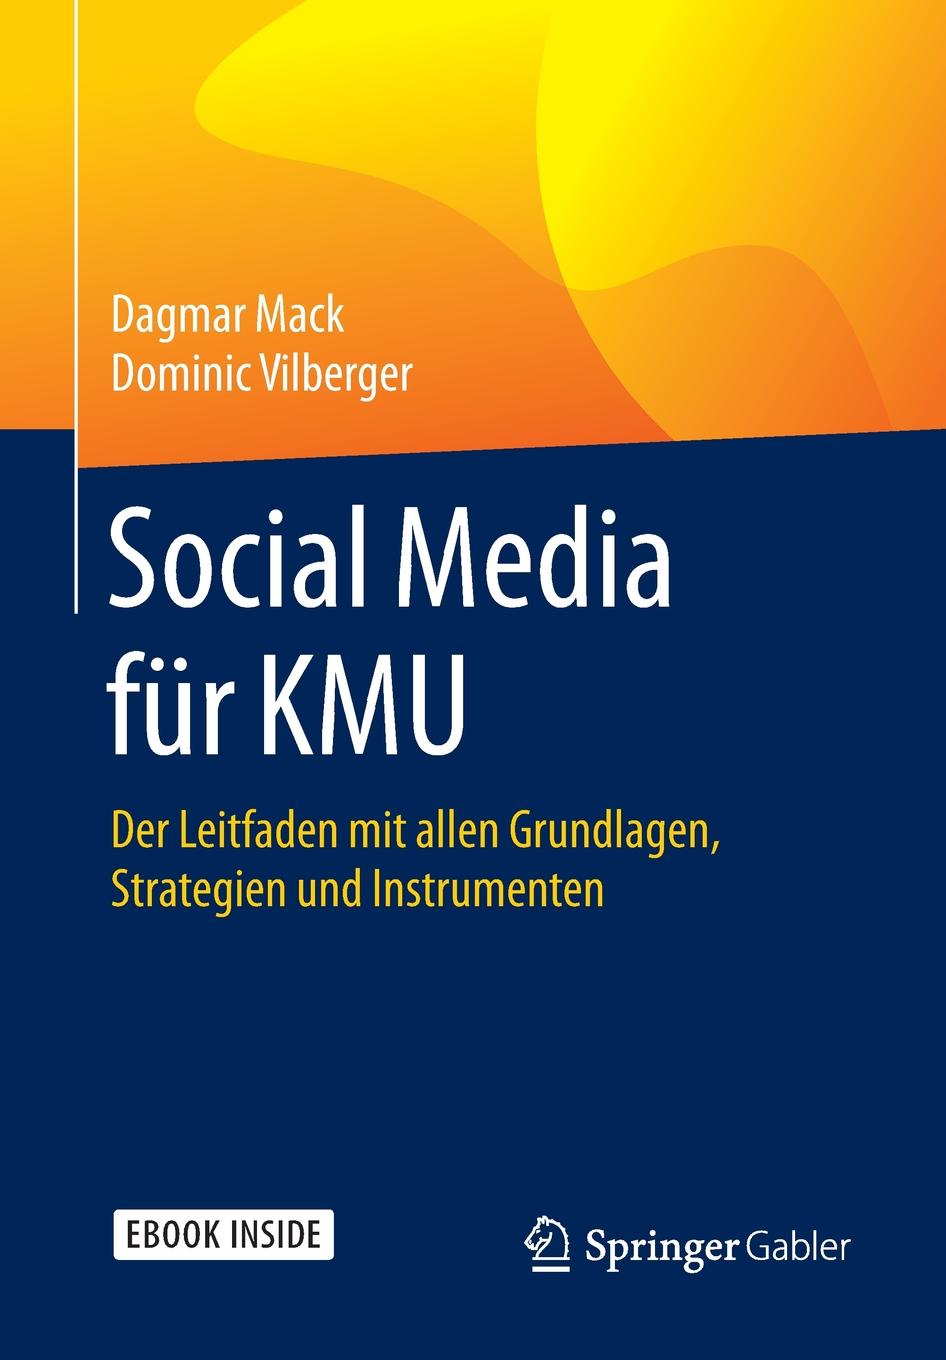 Social Media fur KMU. Der Leitfaden mit allen Grundlagen, Strategien und Instrumenten